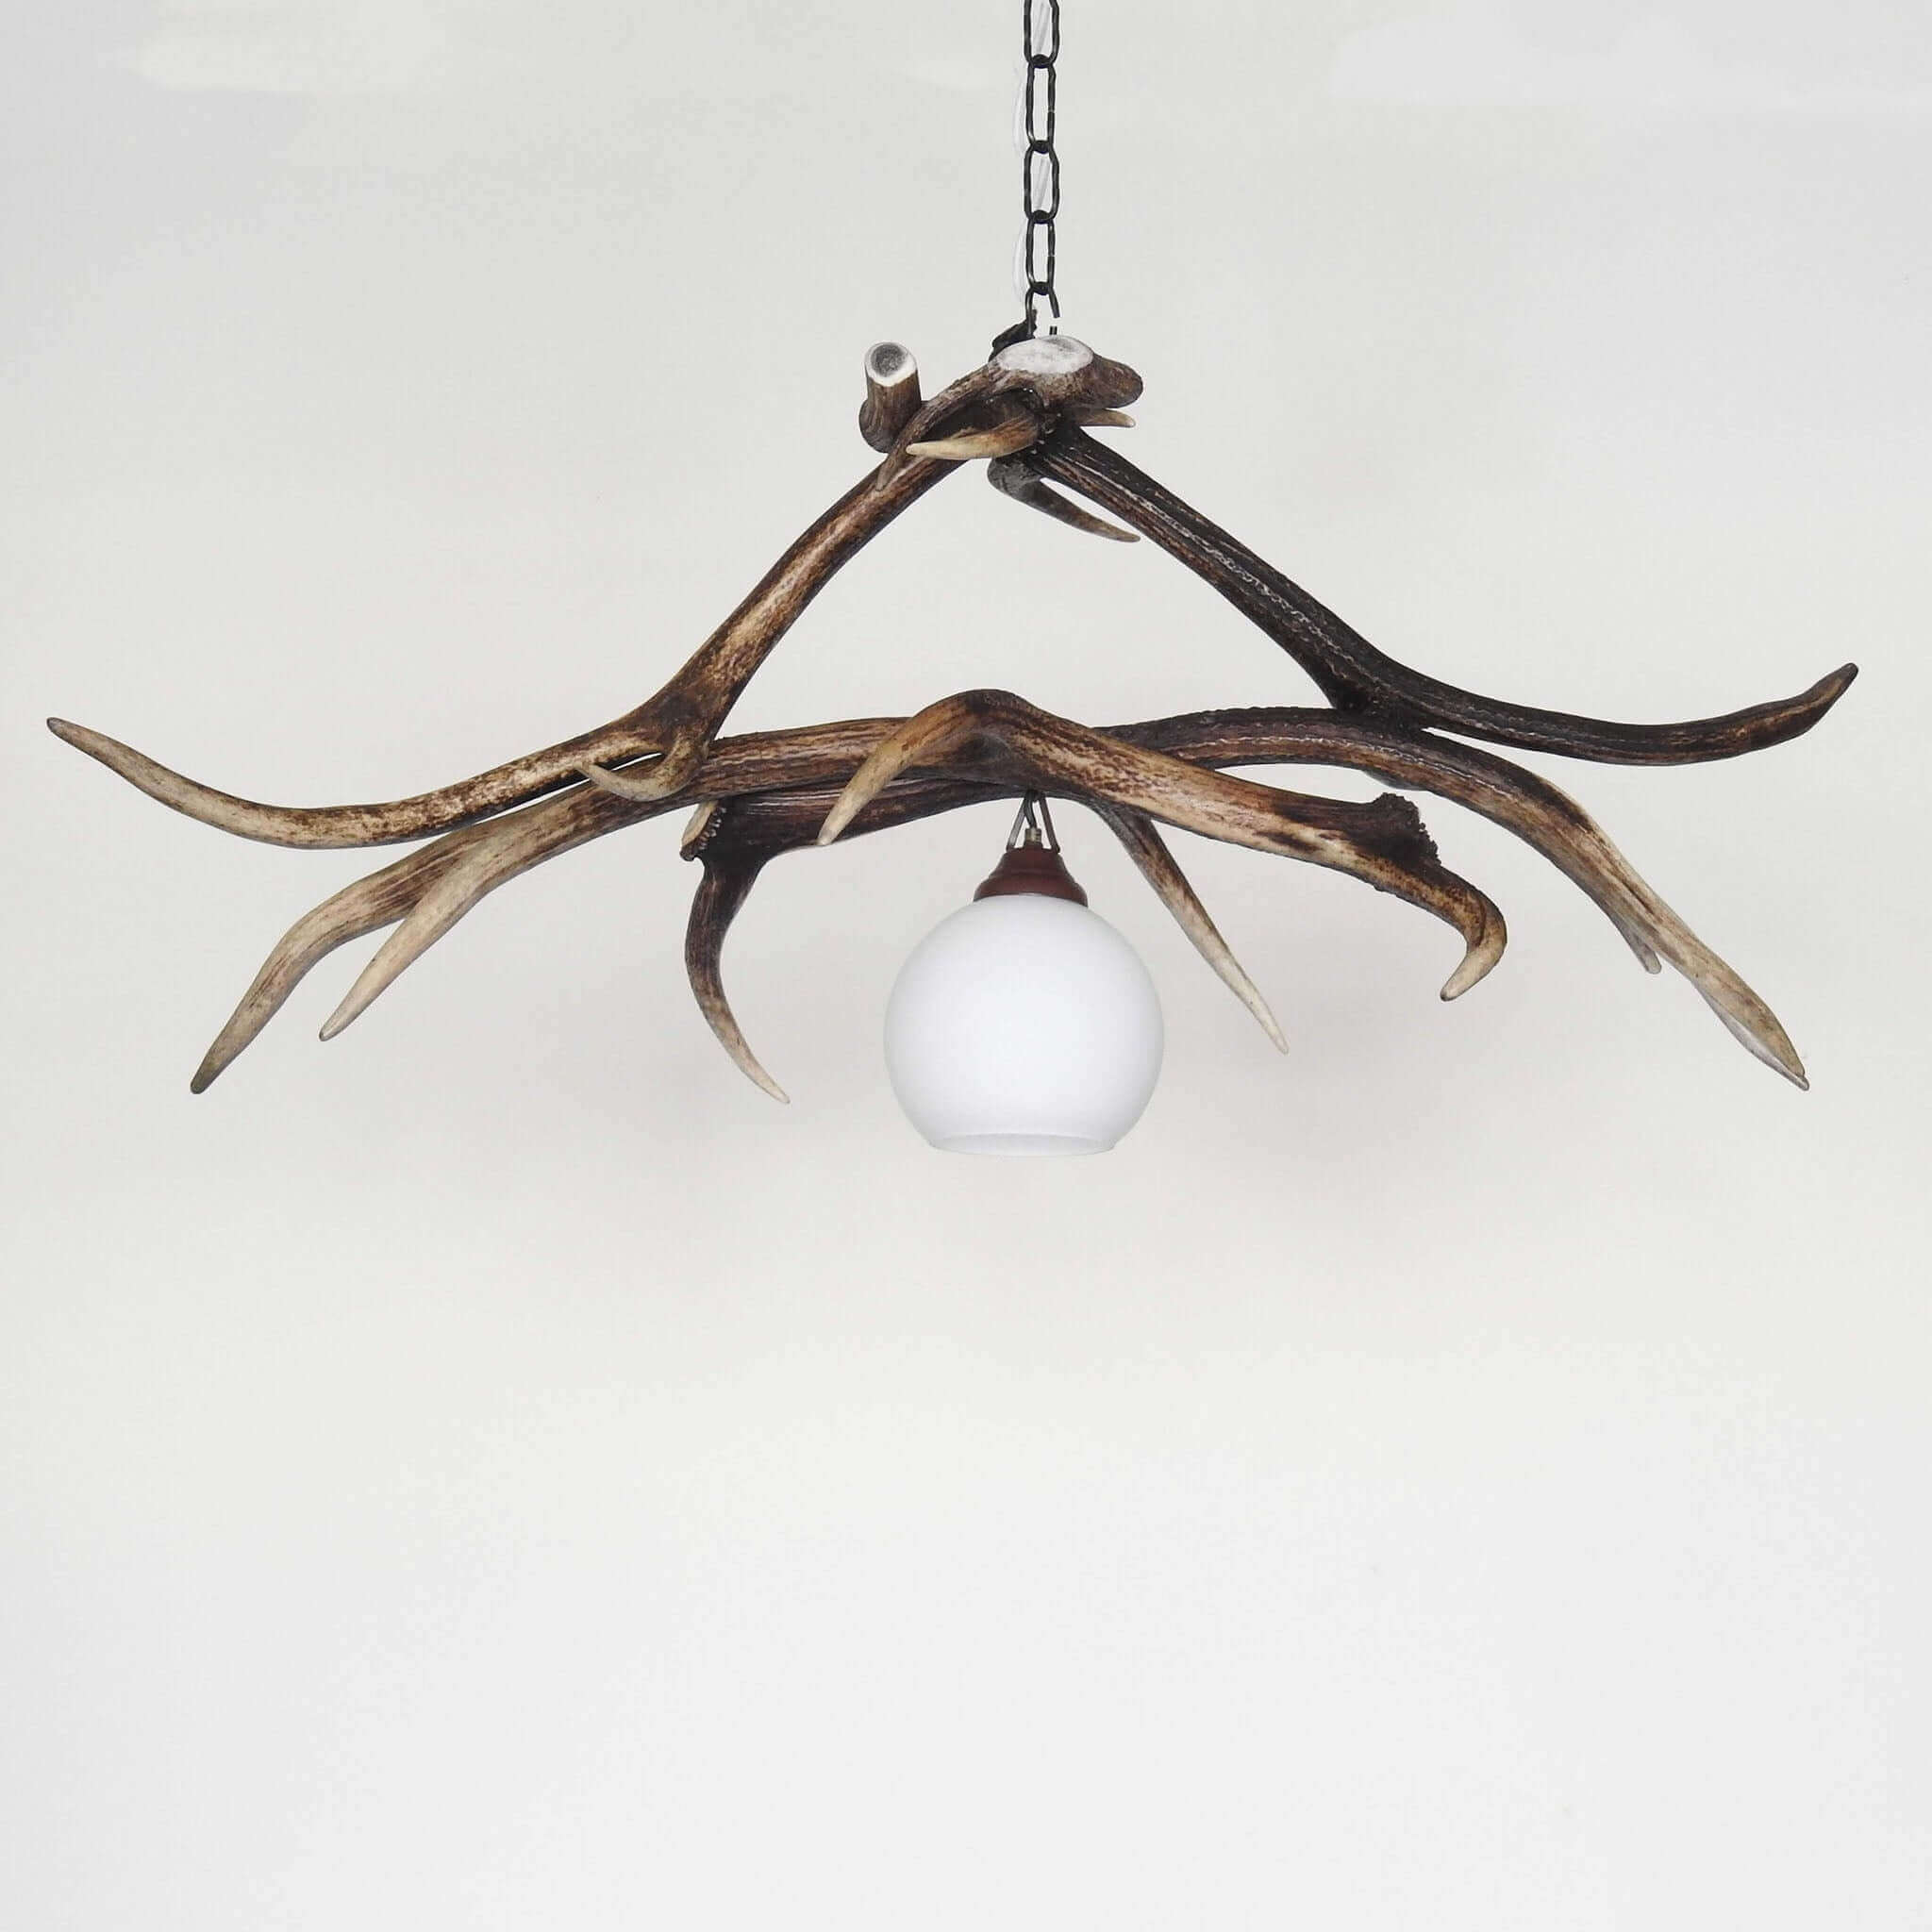 Real deer antler rustic style chandelier.